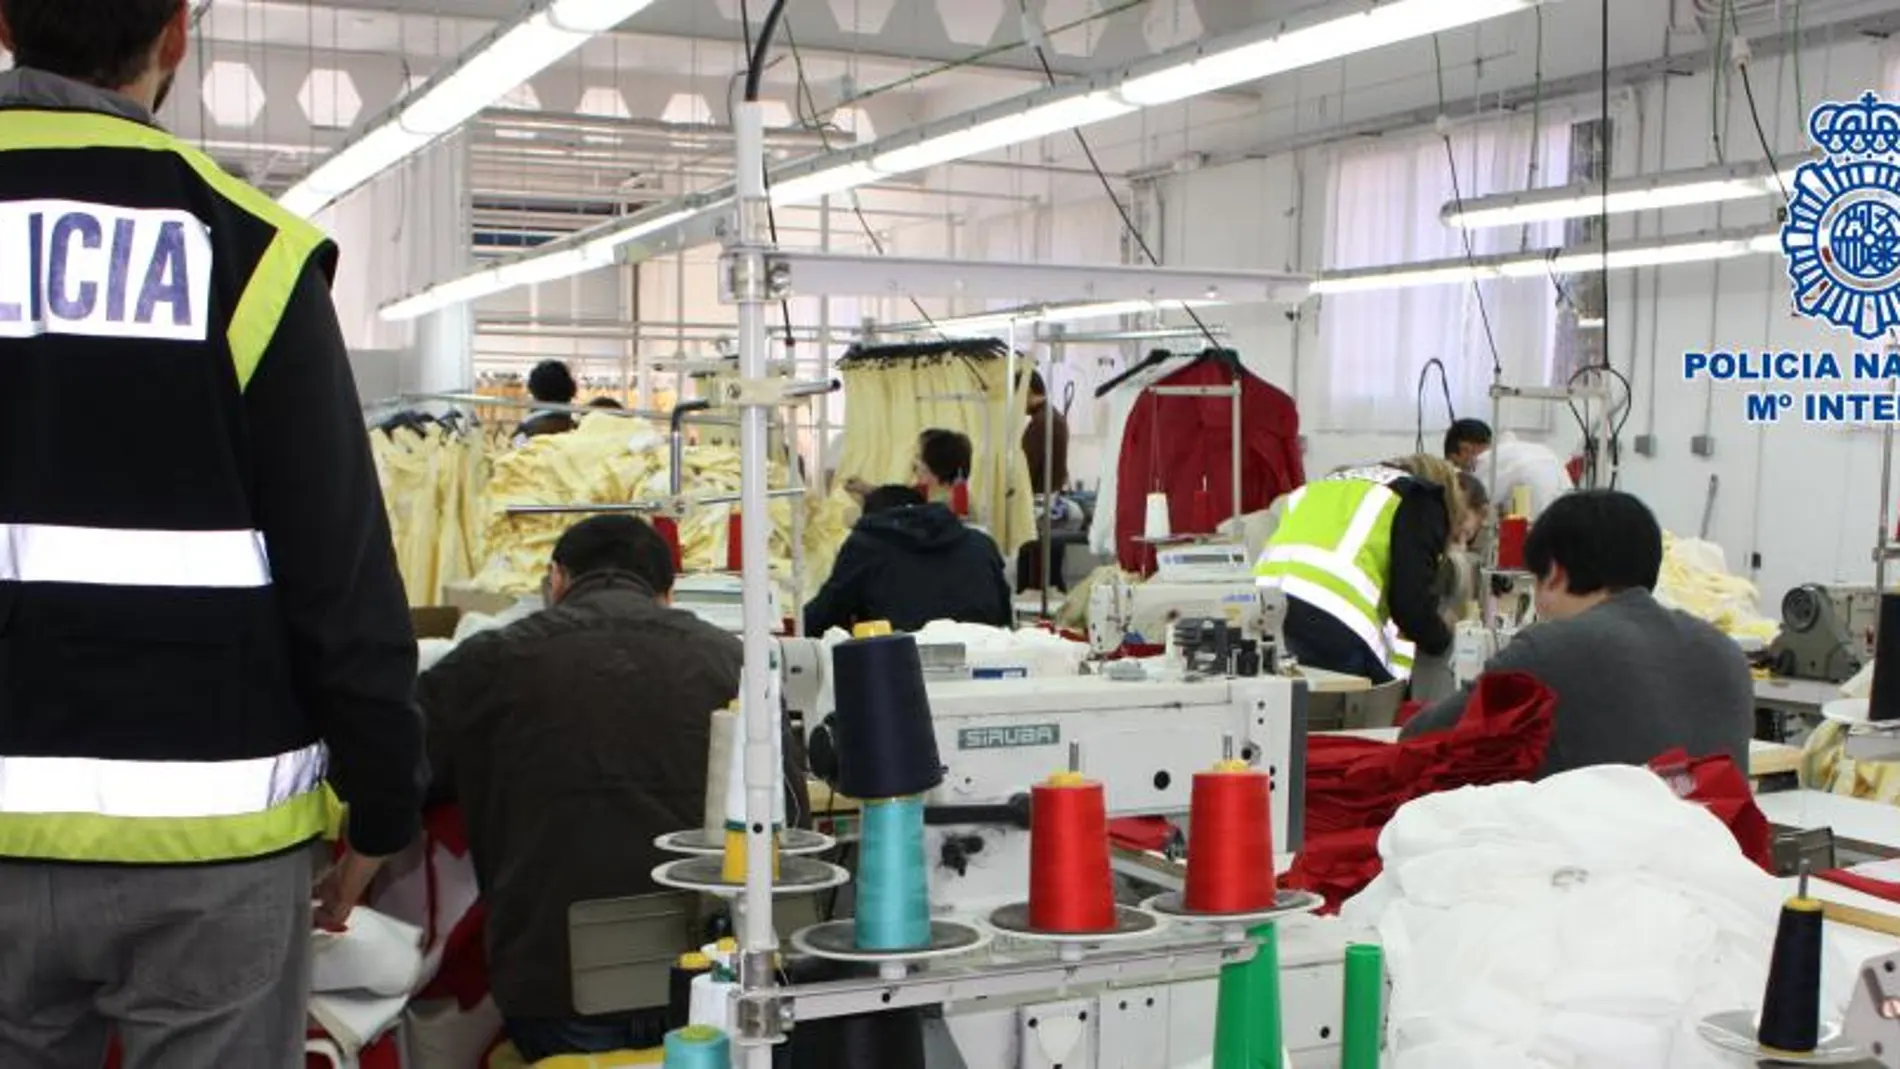 Los empleados trabajaban en pésimas condiciones, junto con máquinas de coser, centros de planchado y cantidades ingentes de telas preparadas y cortadas para su confección